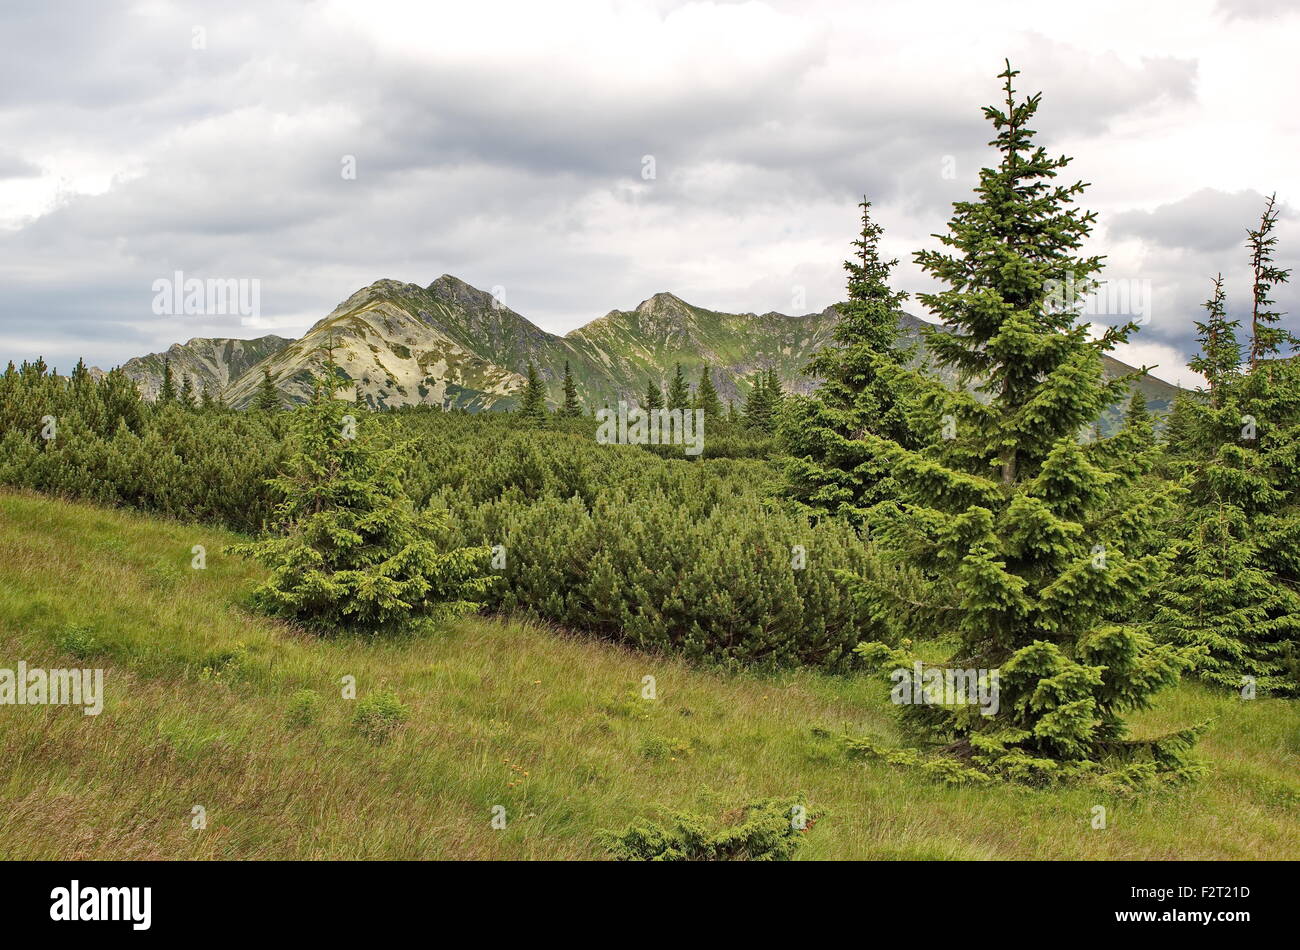 viele Farbtöne von Grün - Knie-Holz, Fichten und Tatra, Slowakei Stockfoto